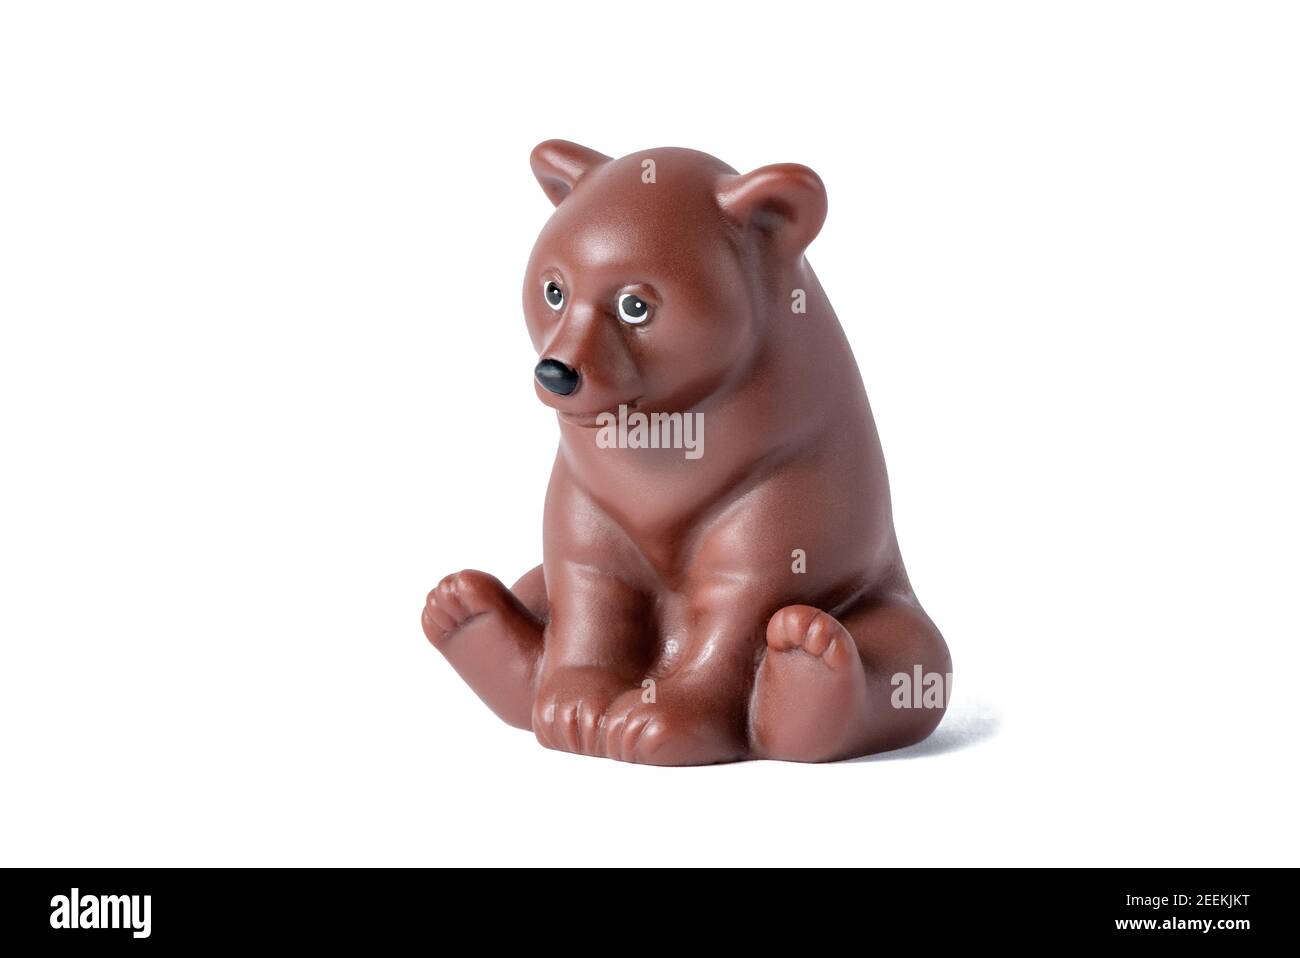 Jouet en caoutchouc ours brun sauvage isolé sur fond blanc. Figurine animale Banque D'Images